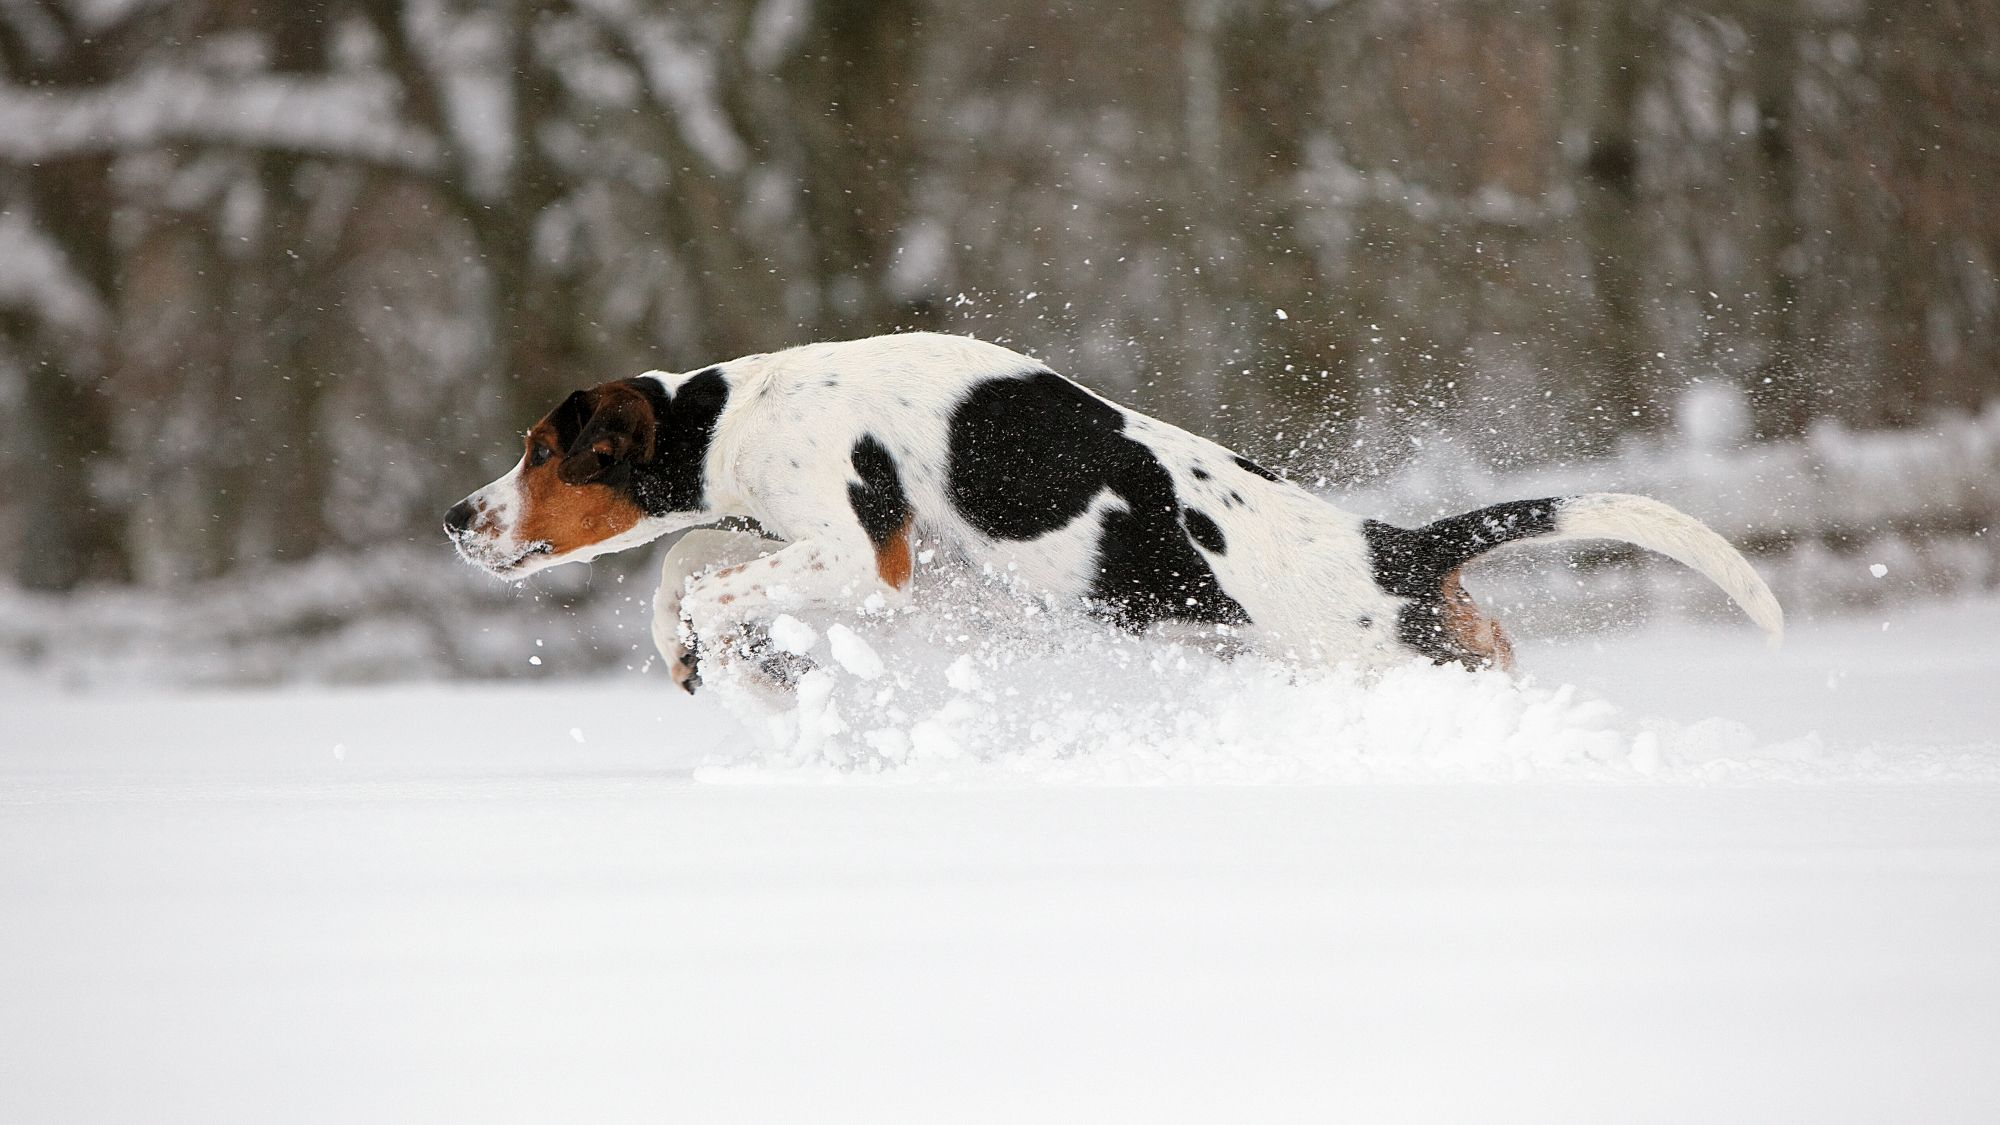 Halden Hound bounding through snow, caught mid-air